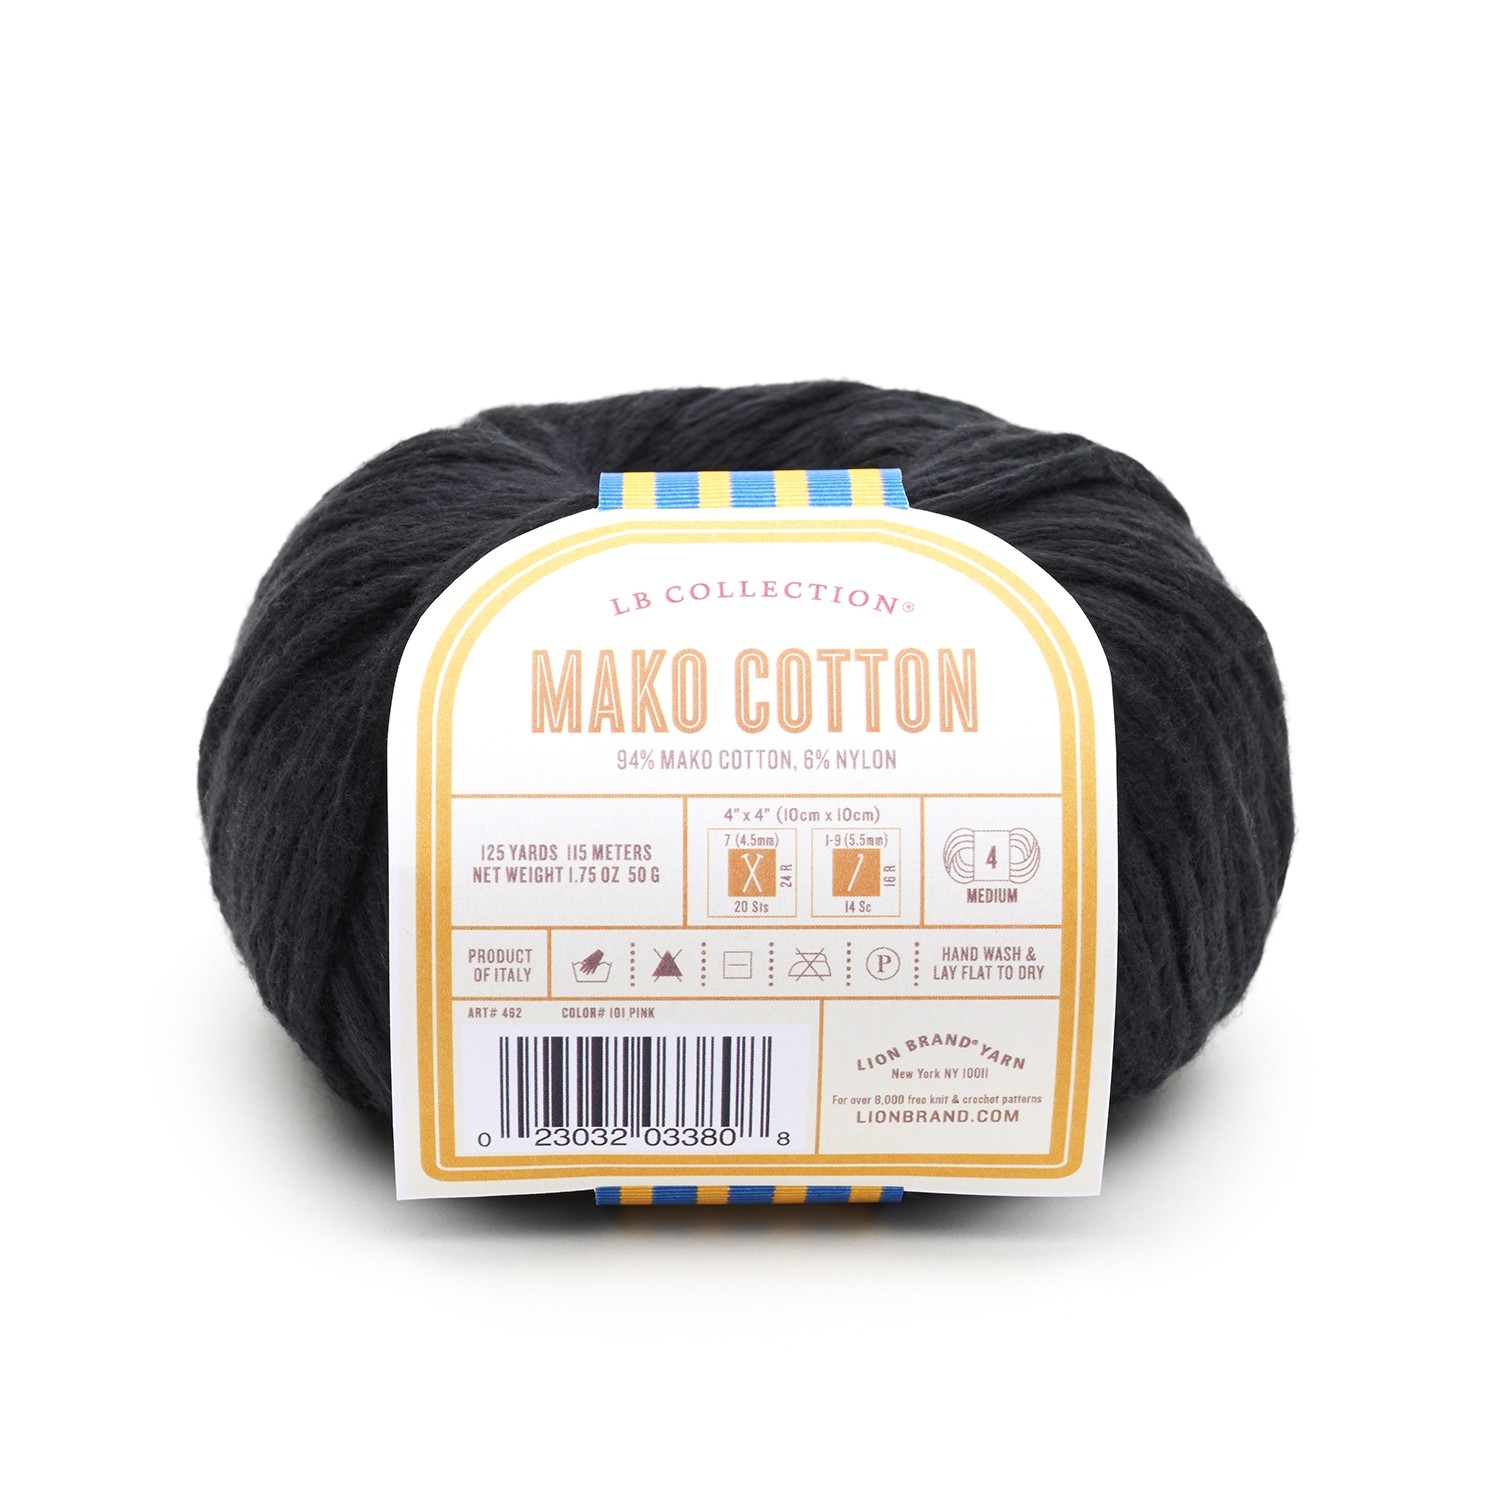 Mako Cotton in Black